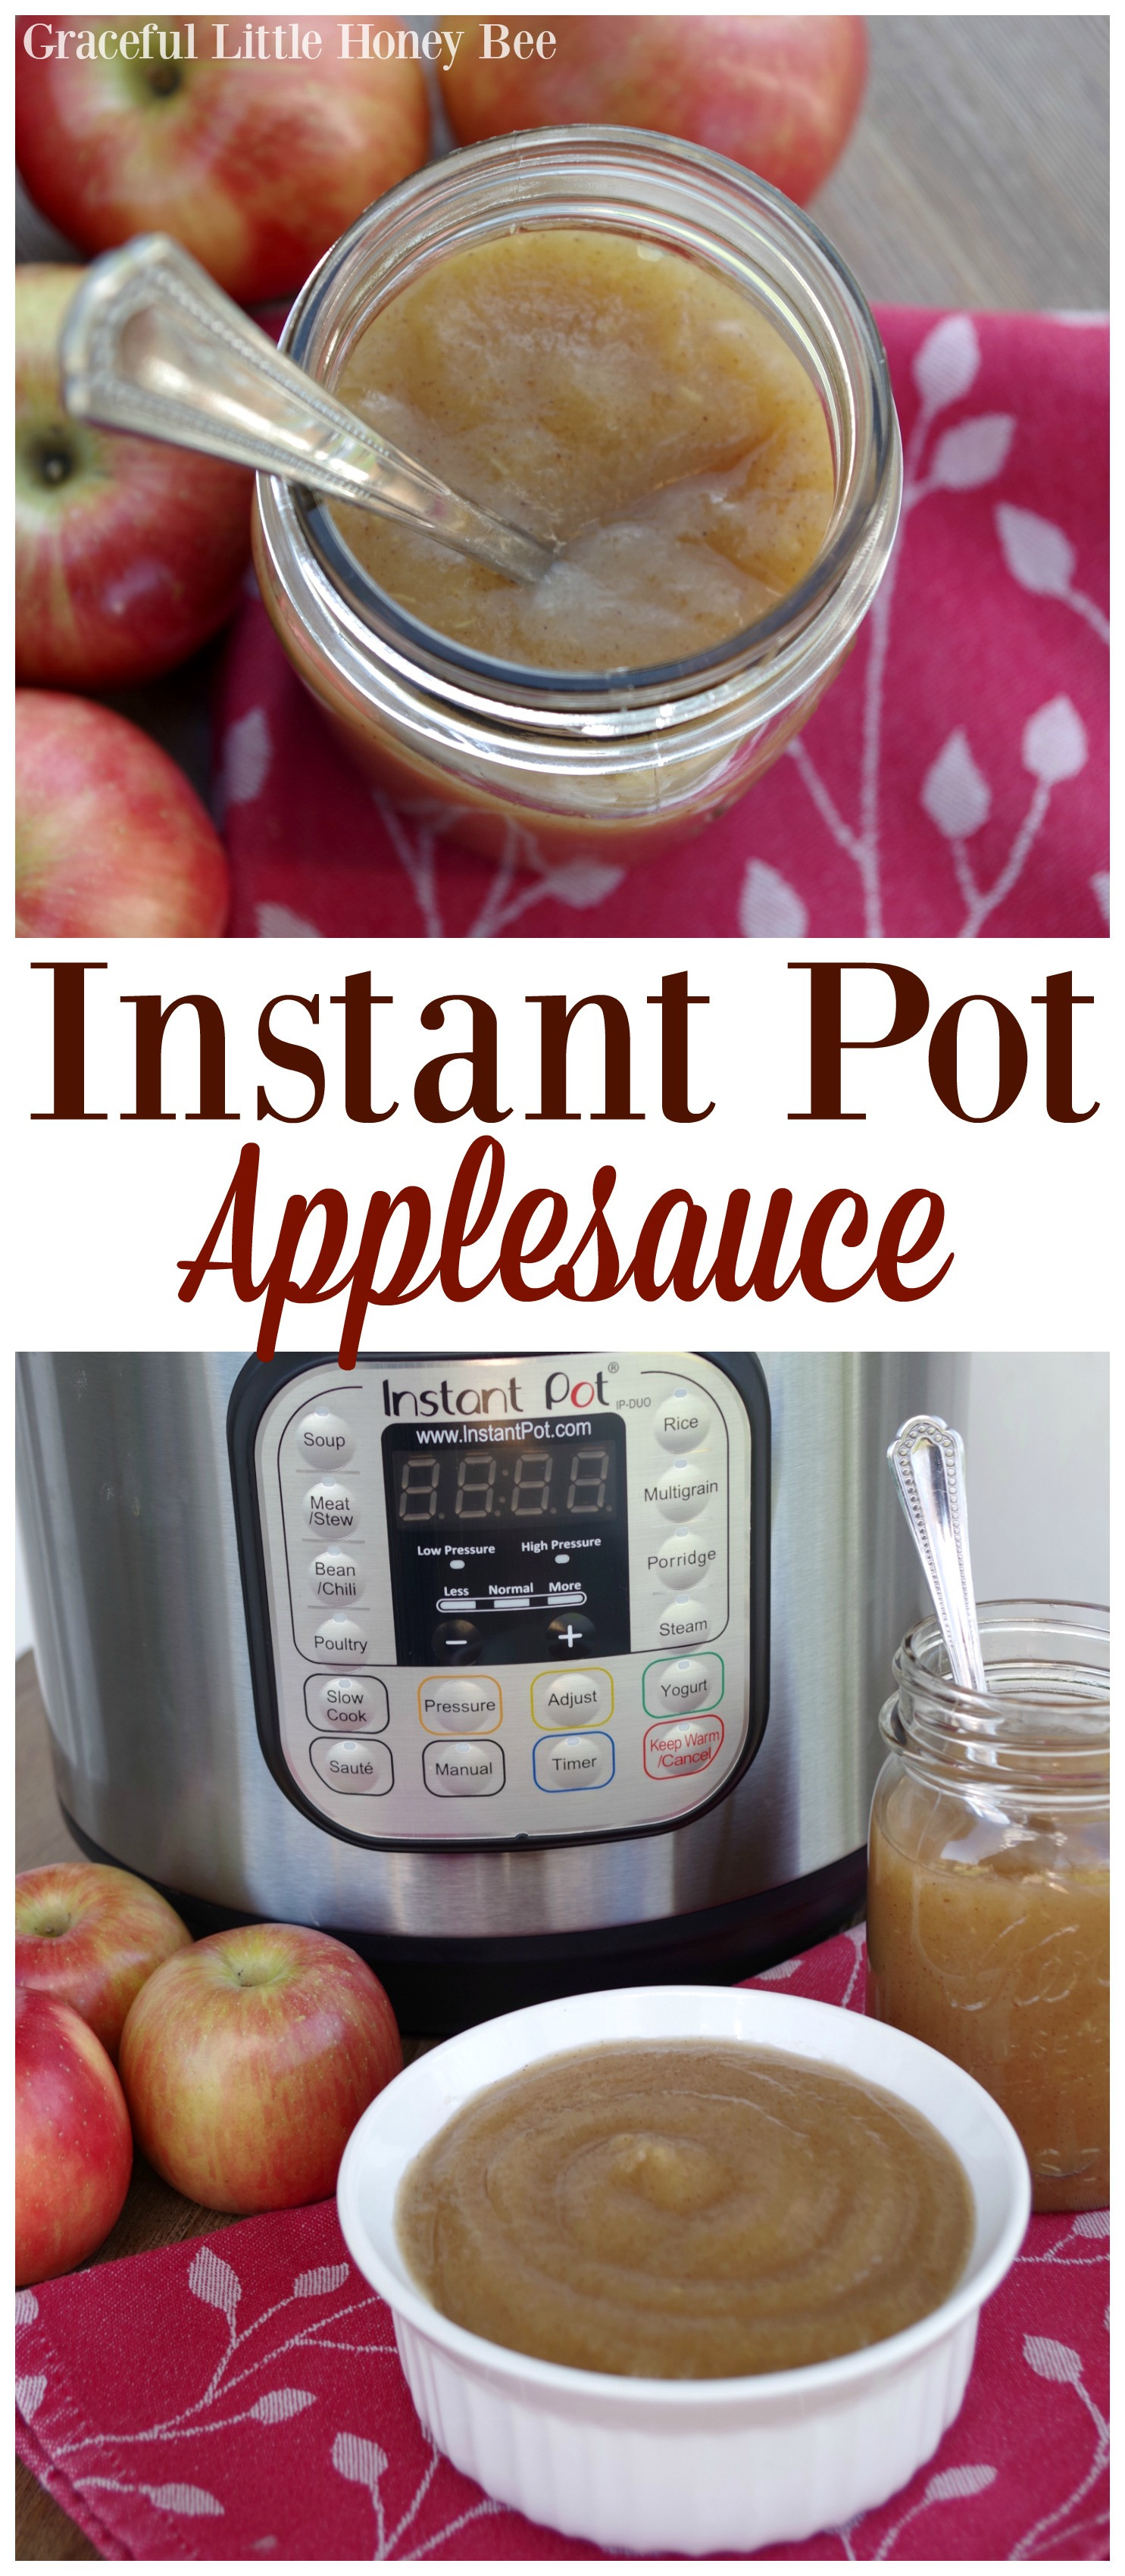 Applesauce Instant Pot
 Instant Pot Applesauce Graceful Little Honey Bee